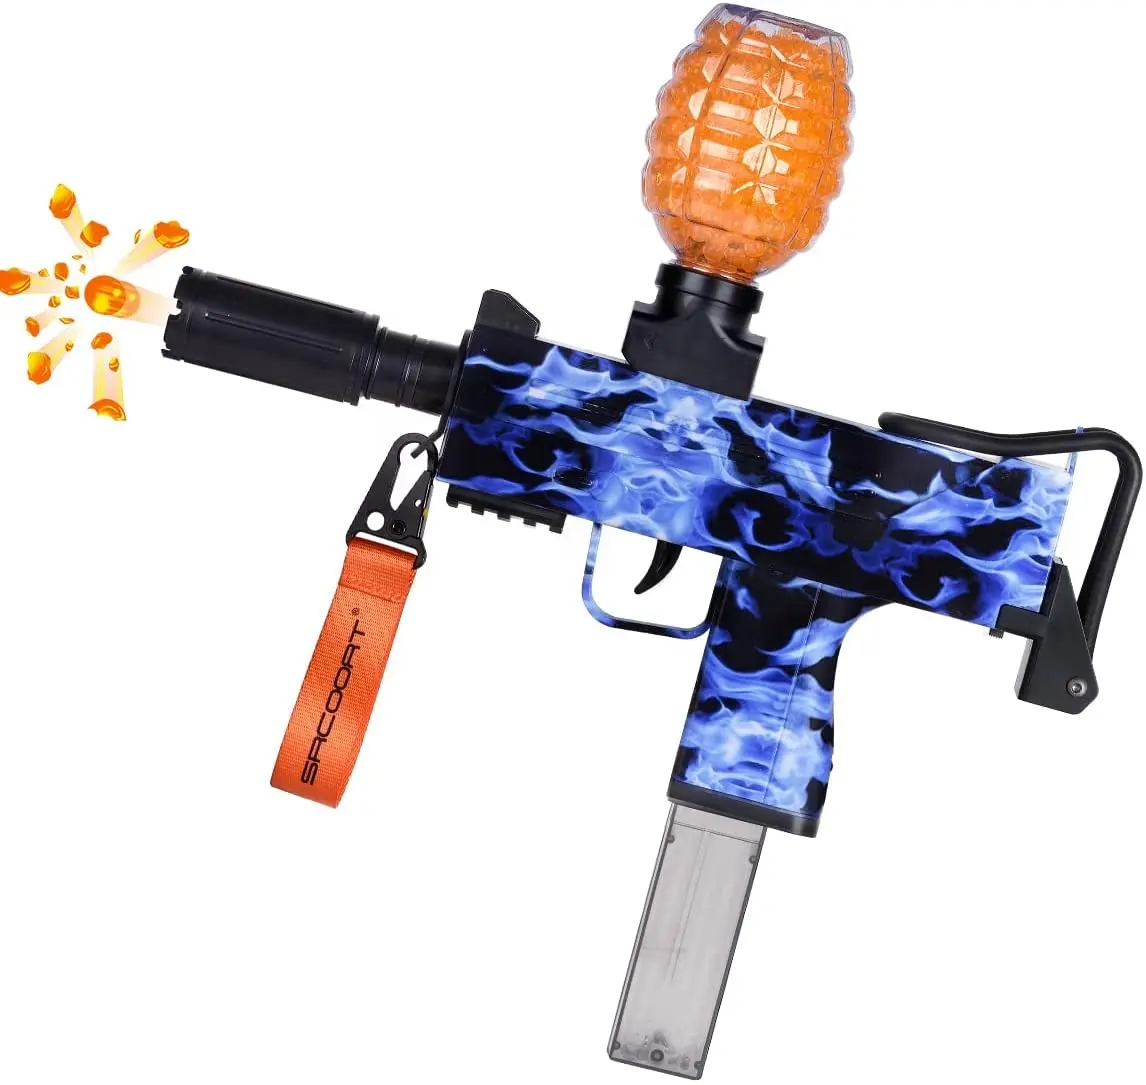 Elektrische Gelatine Bullet Blaster für Kinder mit Gelatine Ball Wasser Gelatine Perlen für Outdoor-Aktivitäten Spiel Toy Gun